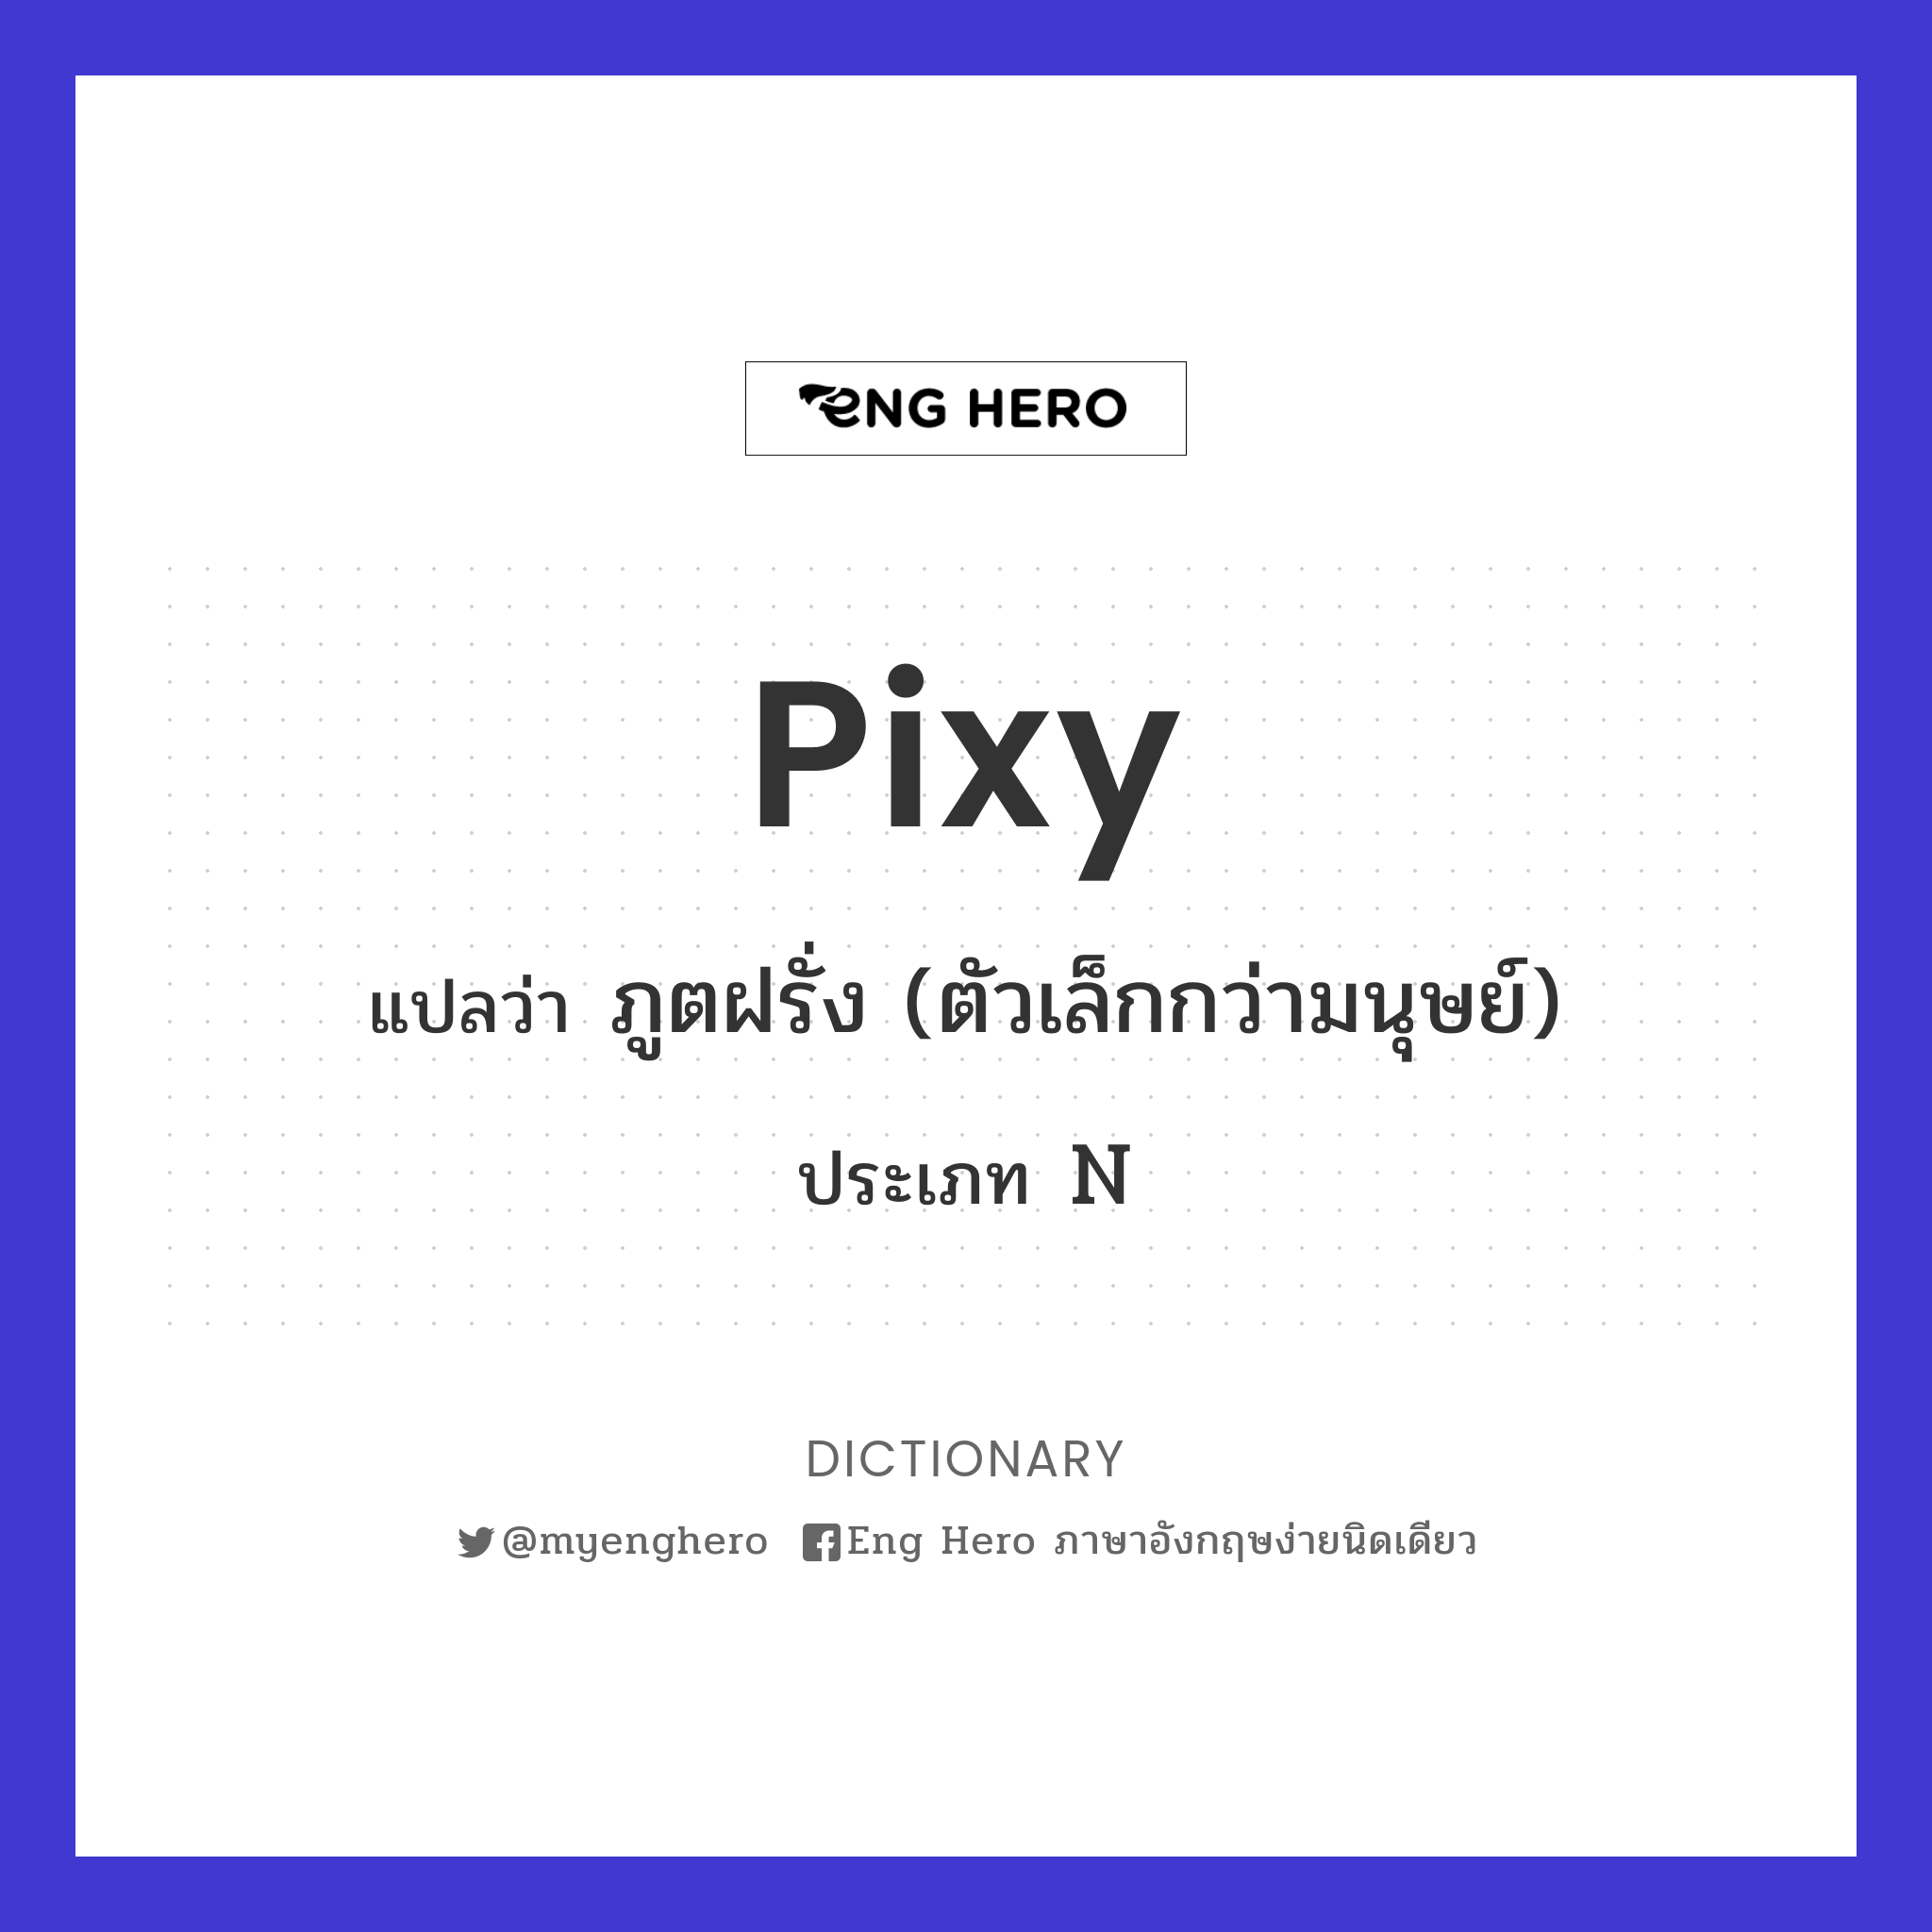 pixy